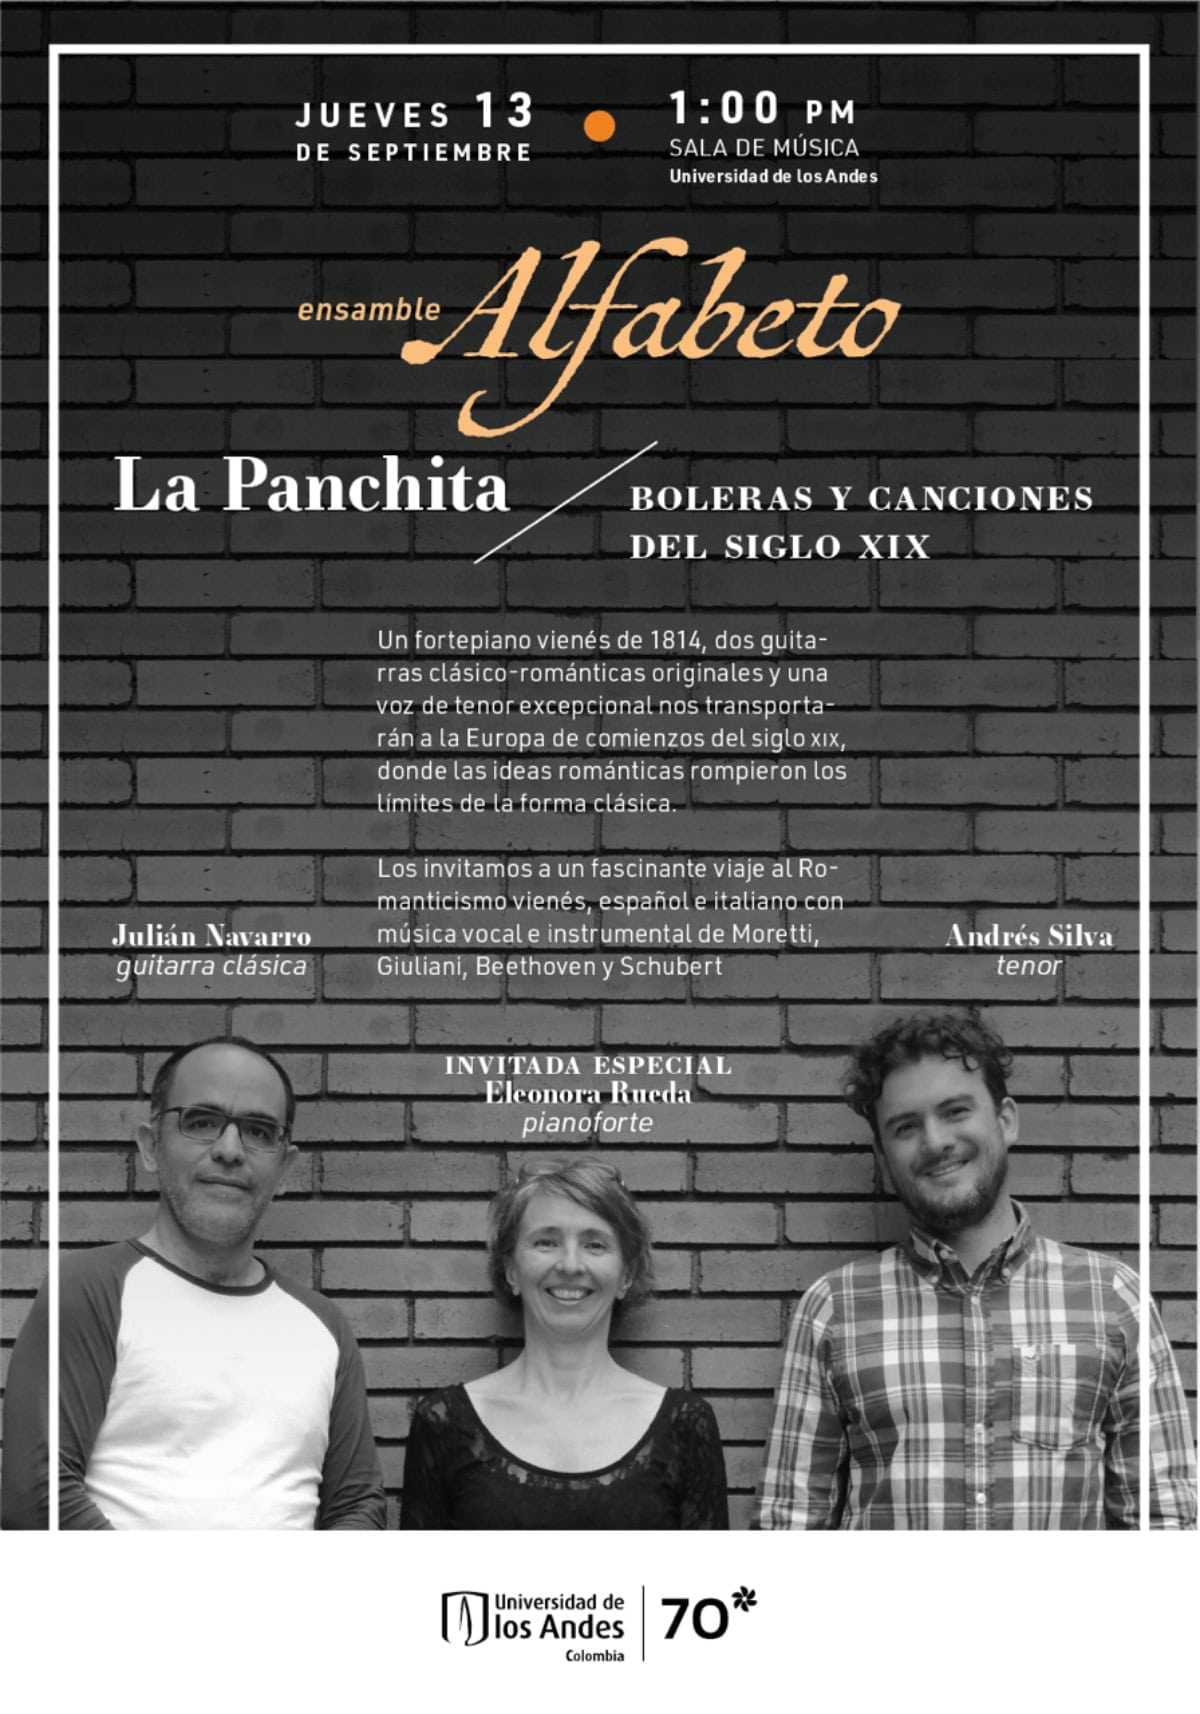 La Panchita, boleras y canciones del siglo XIX - Ensamble Alfabeto